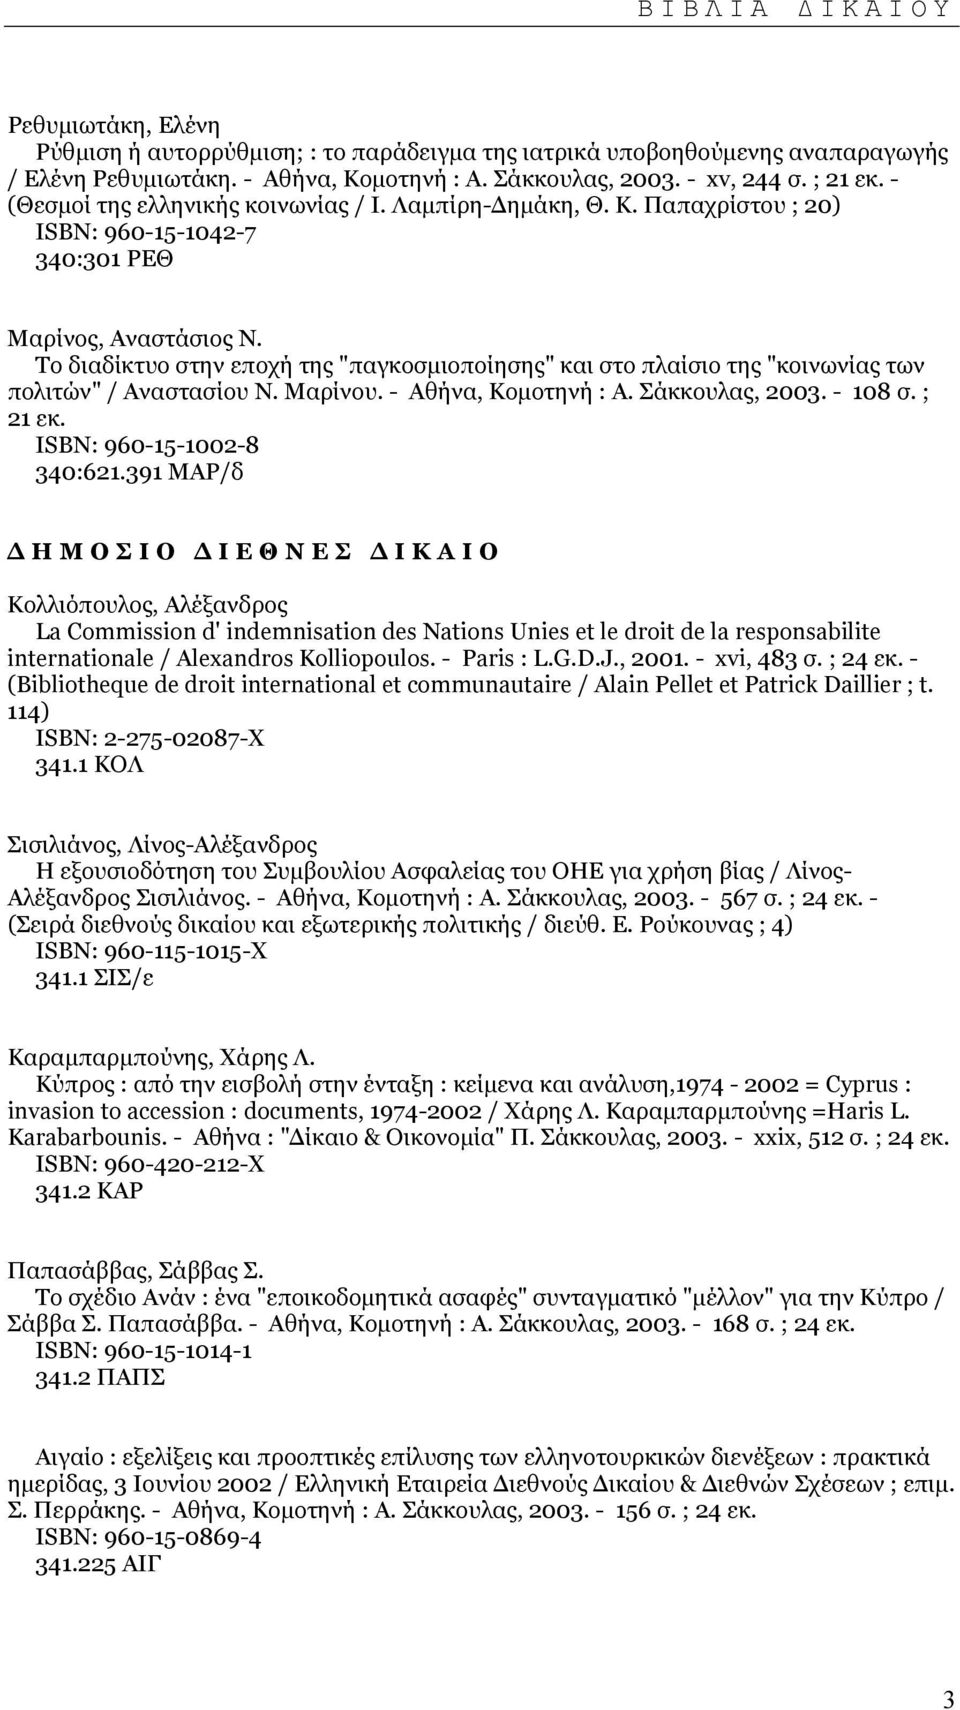 Το διαδίκτυο στην εποχή της "παγκοσµιοποίησης" και στο πλαίσιο της "κοινωνίας των πολιτών" / Αναστασίου Ν. Μαρίνου. - Αθήνα, Κοµοτηνή : Α. Σάκκουλας, 2003. - 108 σ. ; 21 εκ.